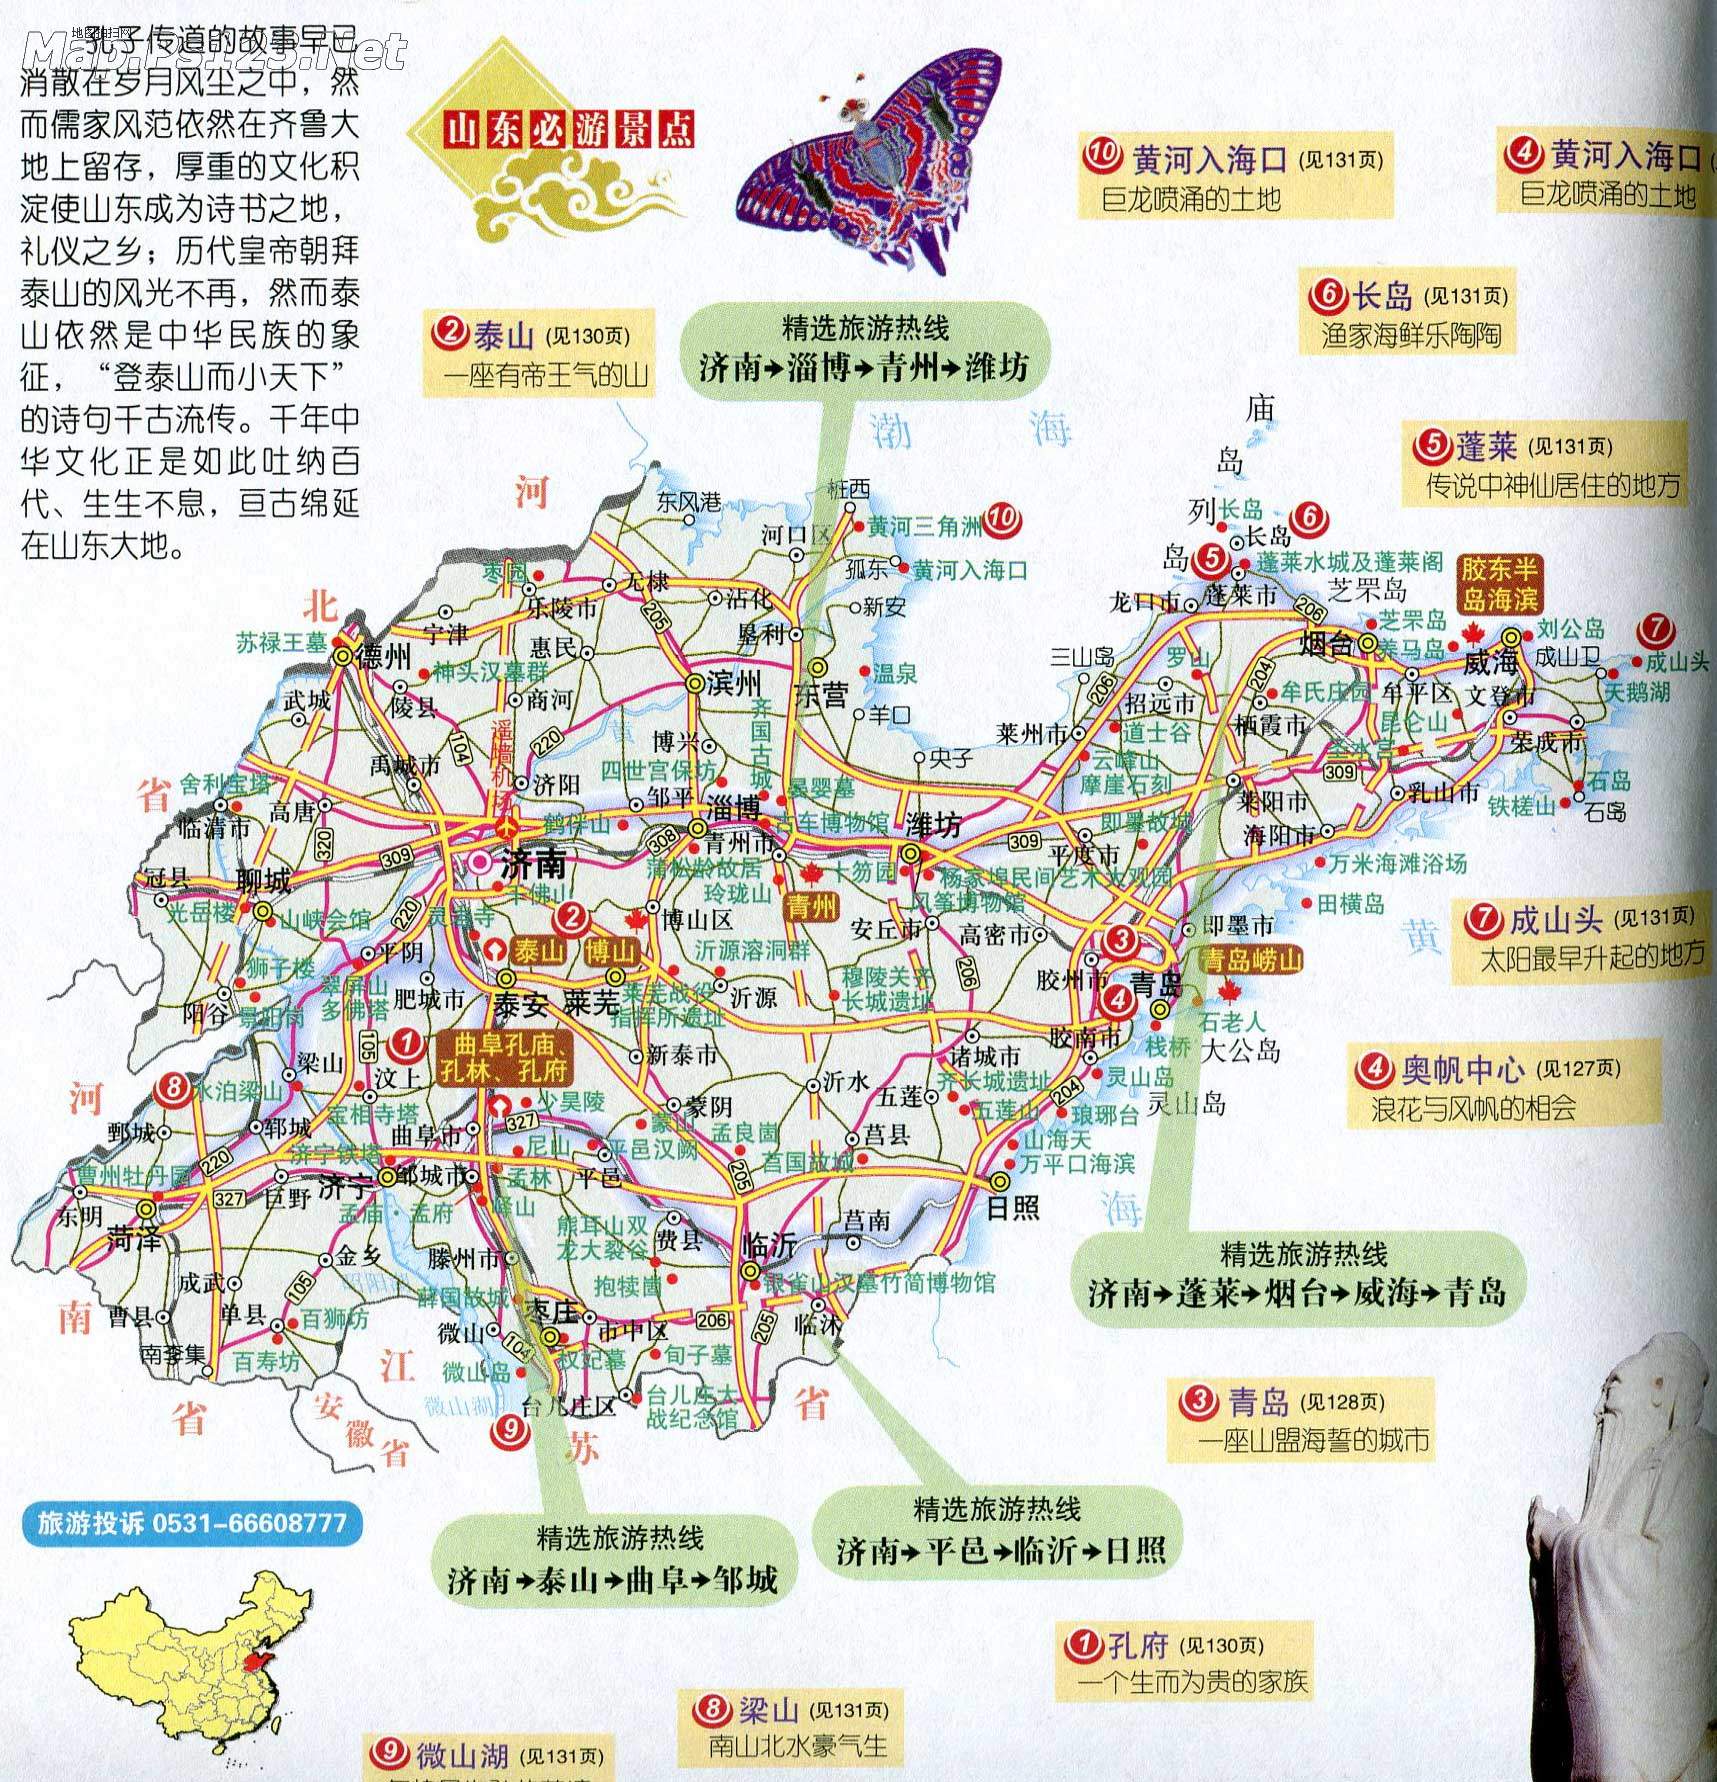 山东省旅游地图(必游景点)